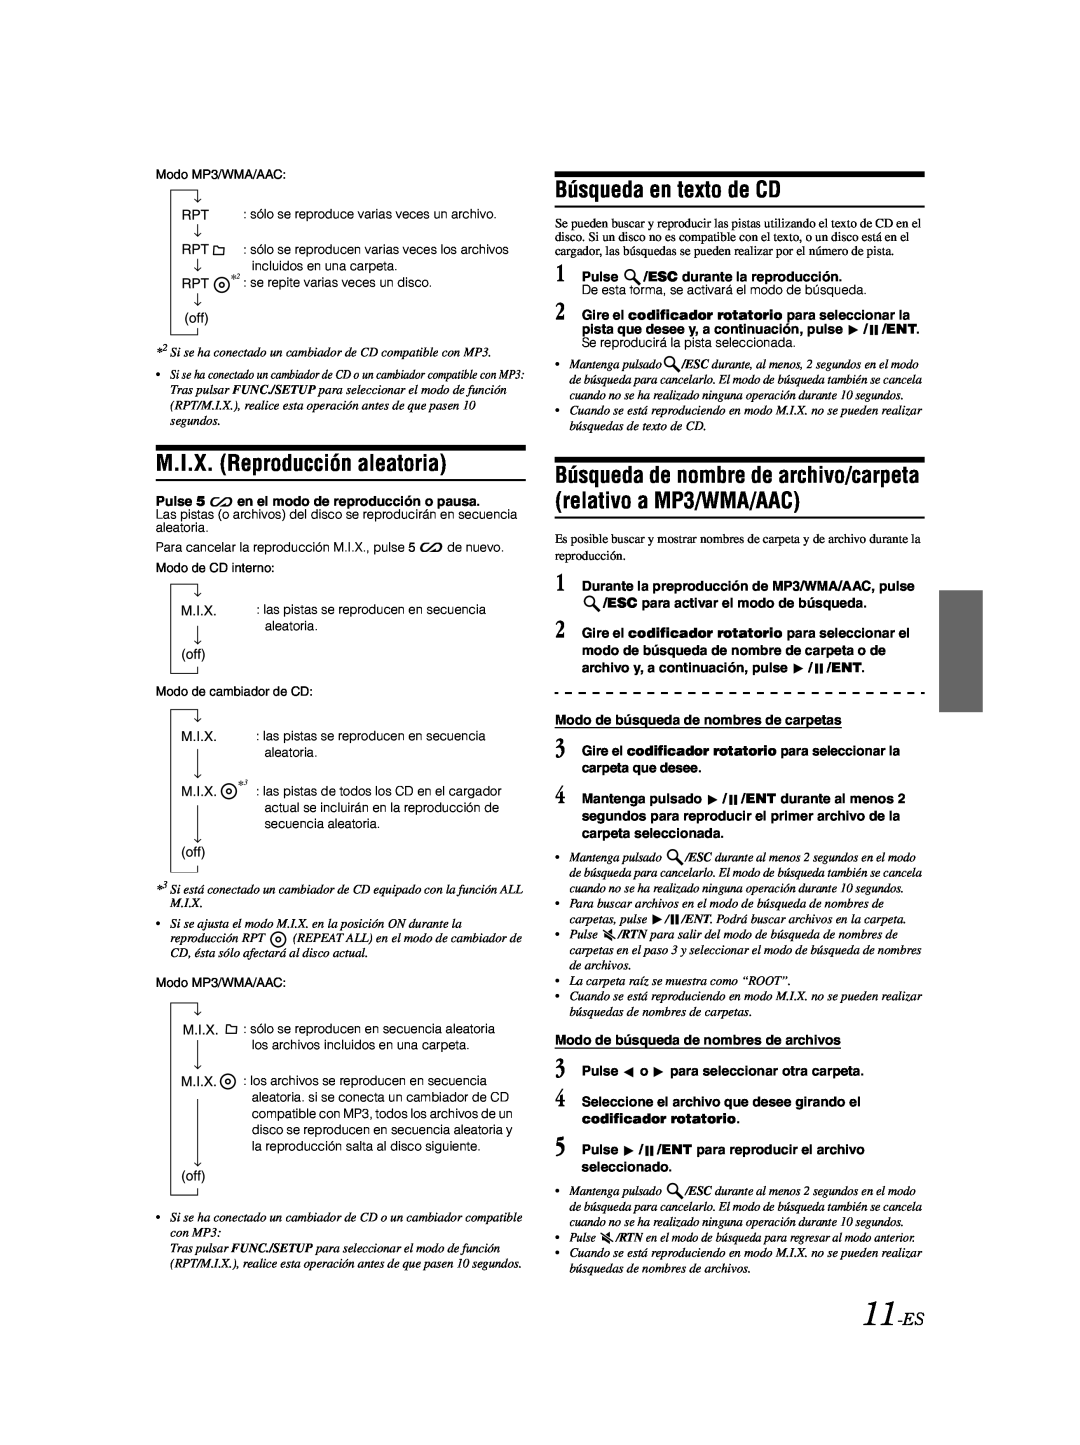 Alpine CDA-9885 owner manual Búsqueda en texto de CD, M.I.X. Reproducción aleatoria, 11-ES 